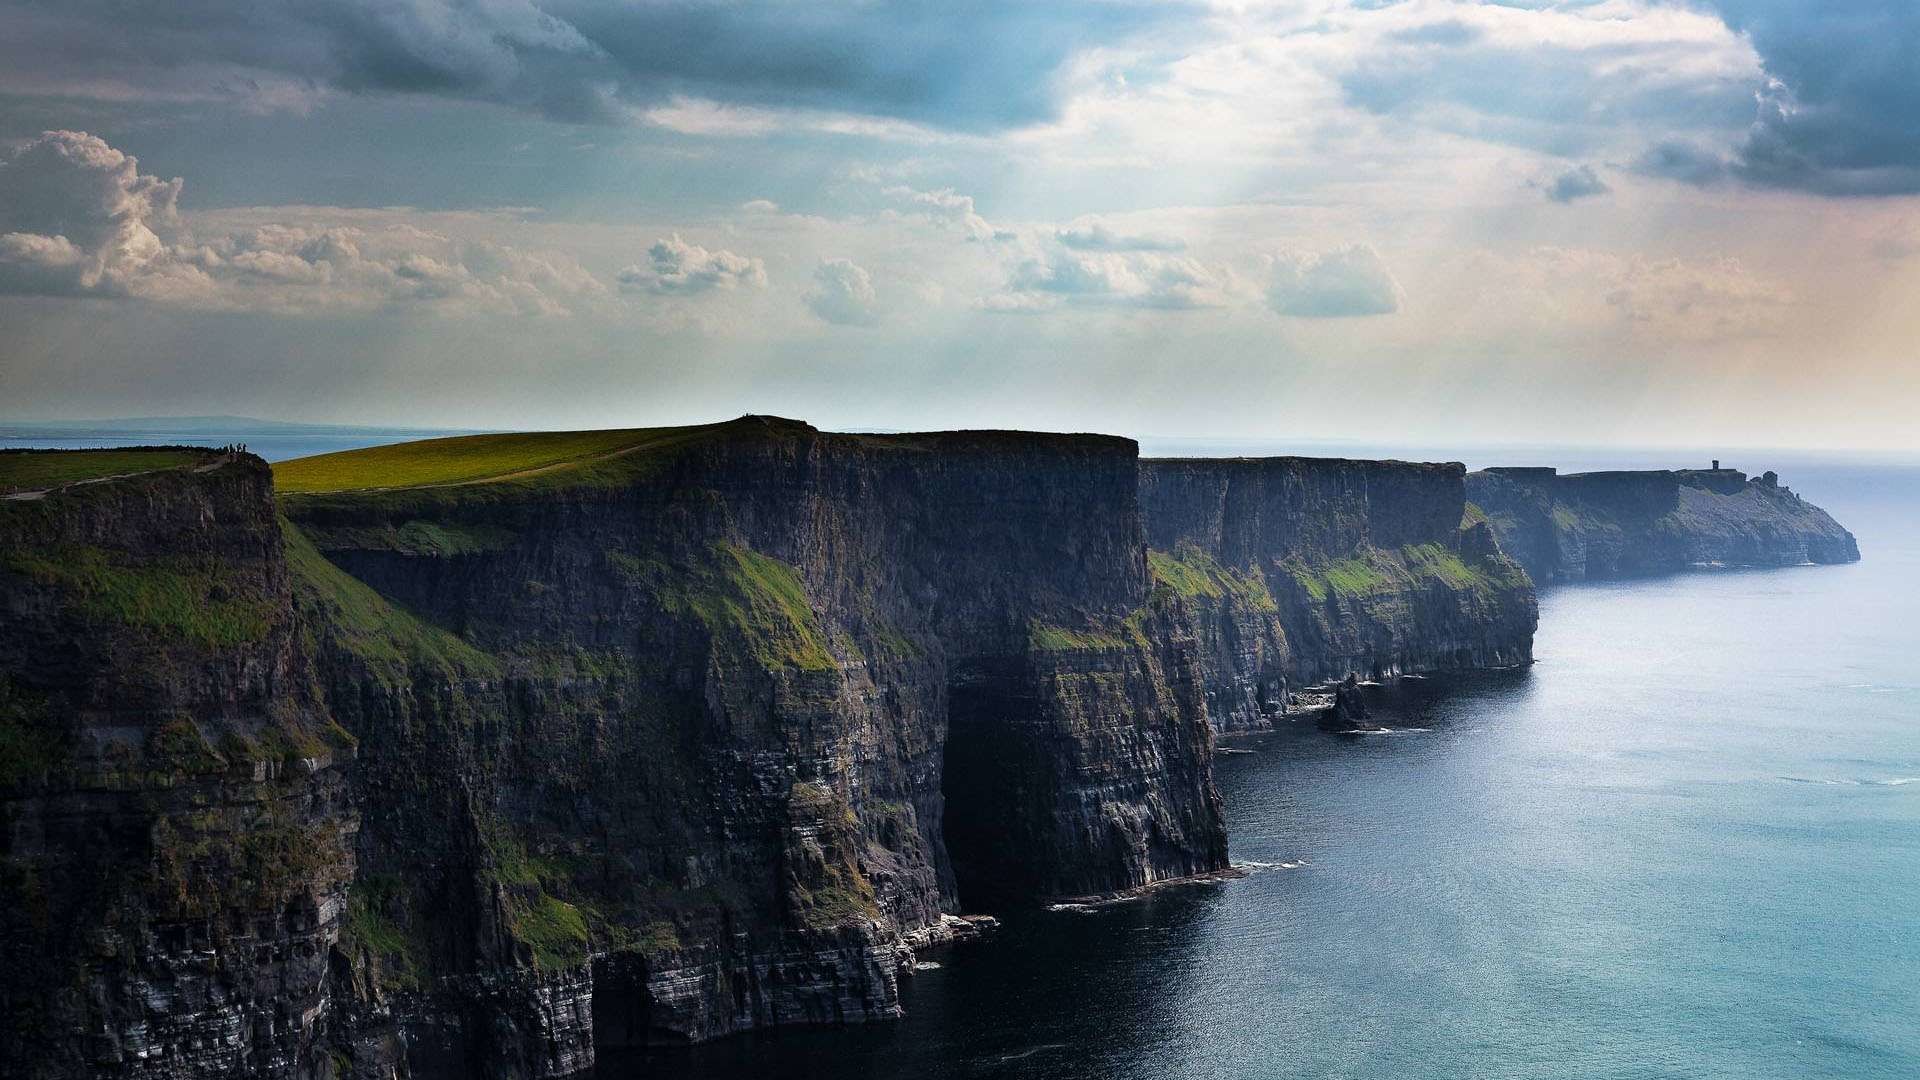 Hình nền desktop Ireland (58+ hình ảnh) - Khám phá những hình nền desktop Ireland tuyệt đẹp, đa dạng với 58+ hình ảnh khác nhau. Từ các cảnh đẹp của Dublin, vườn thú Dublin hay cảnh quan buồn bã trên đảo Skellig Michael, bạn sẽ đắm chìm trong vẻ đẹp của Emerald Isle. Hãy tải hình ảnh và truyền cảm hứng thật tuyệt vời cho công việc hàng ngày của bạn.